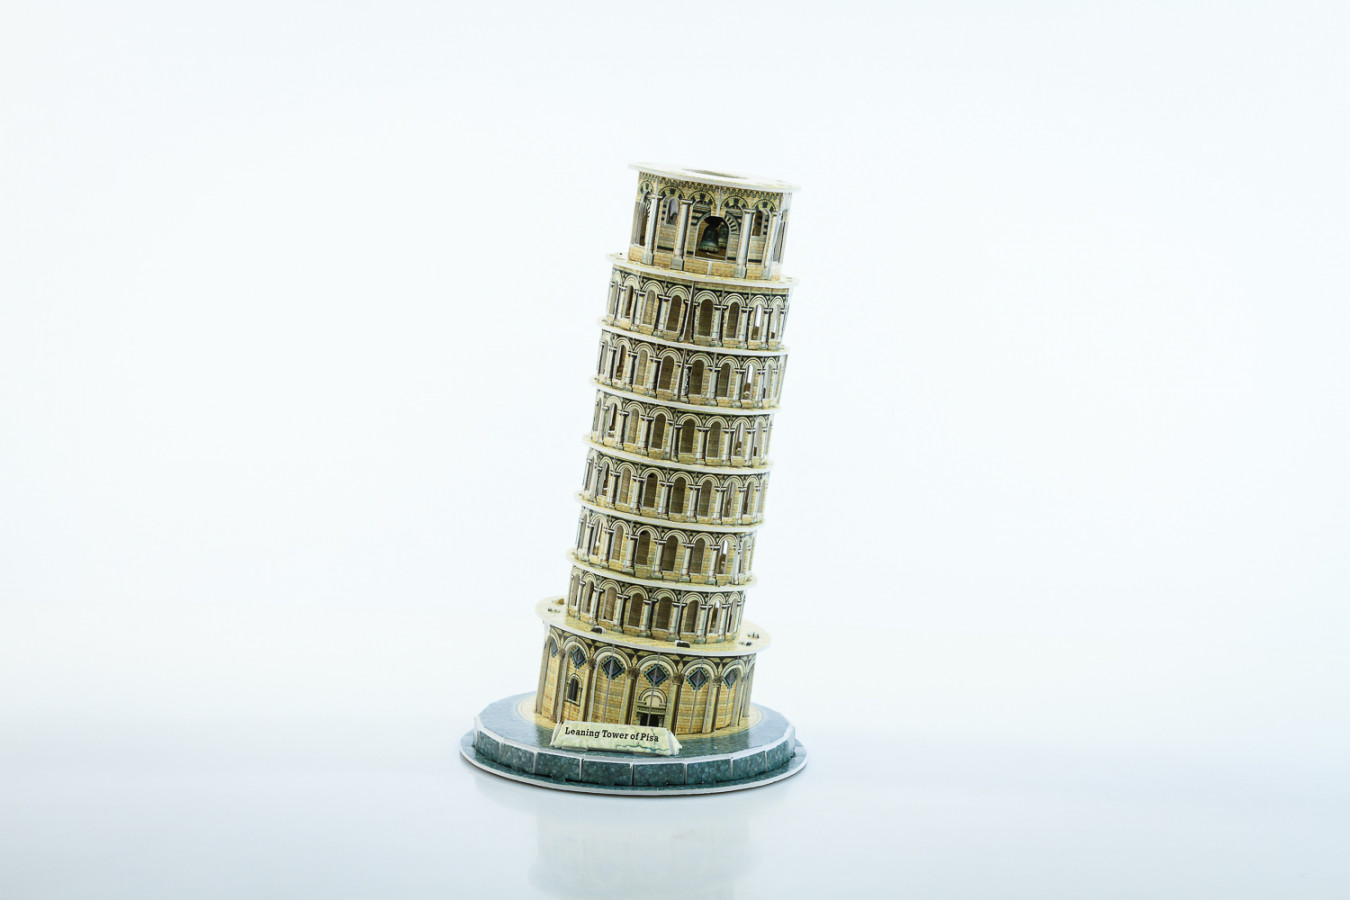 ImagenRompecabezas 3D : Torre Empinada de pisa